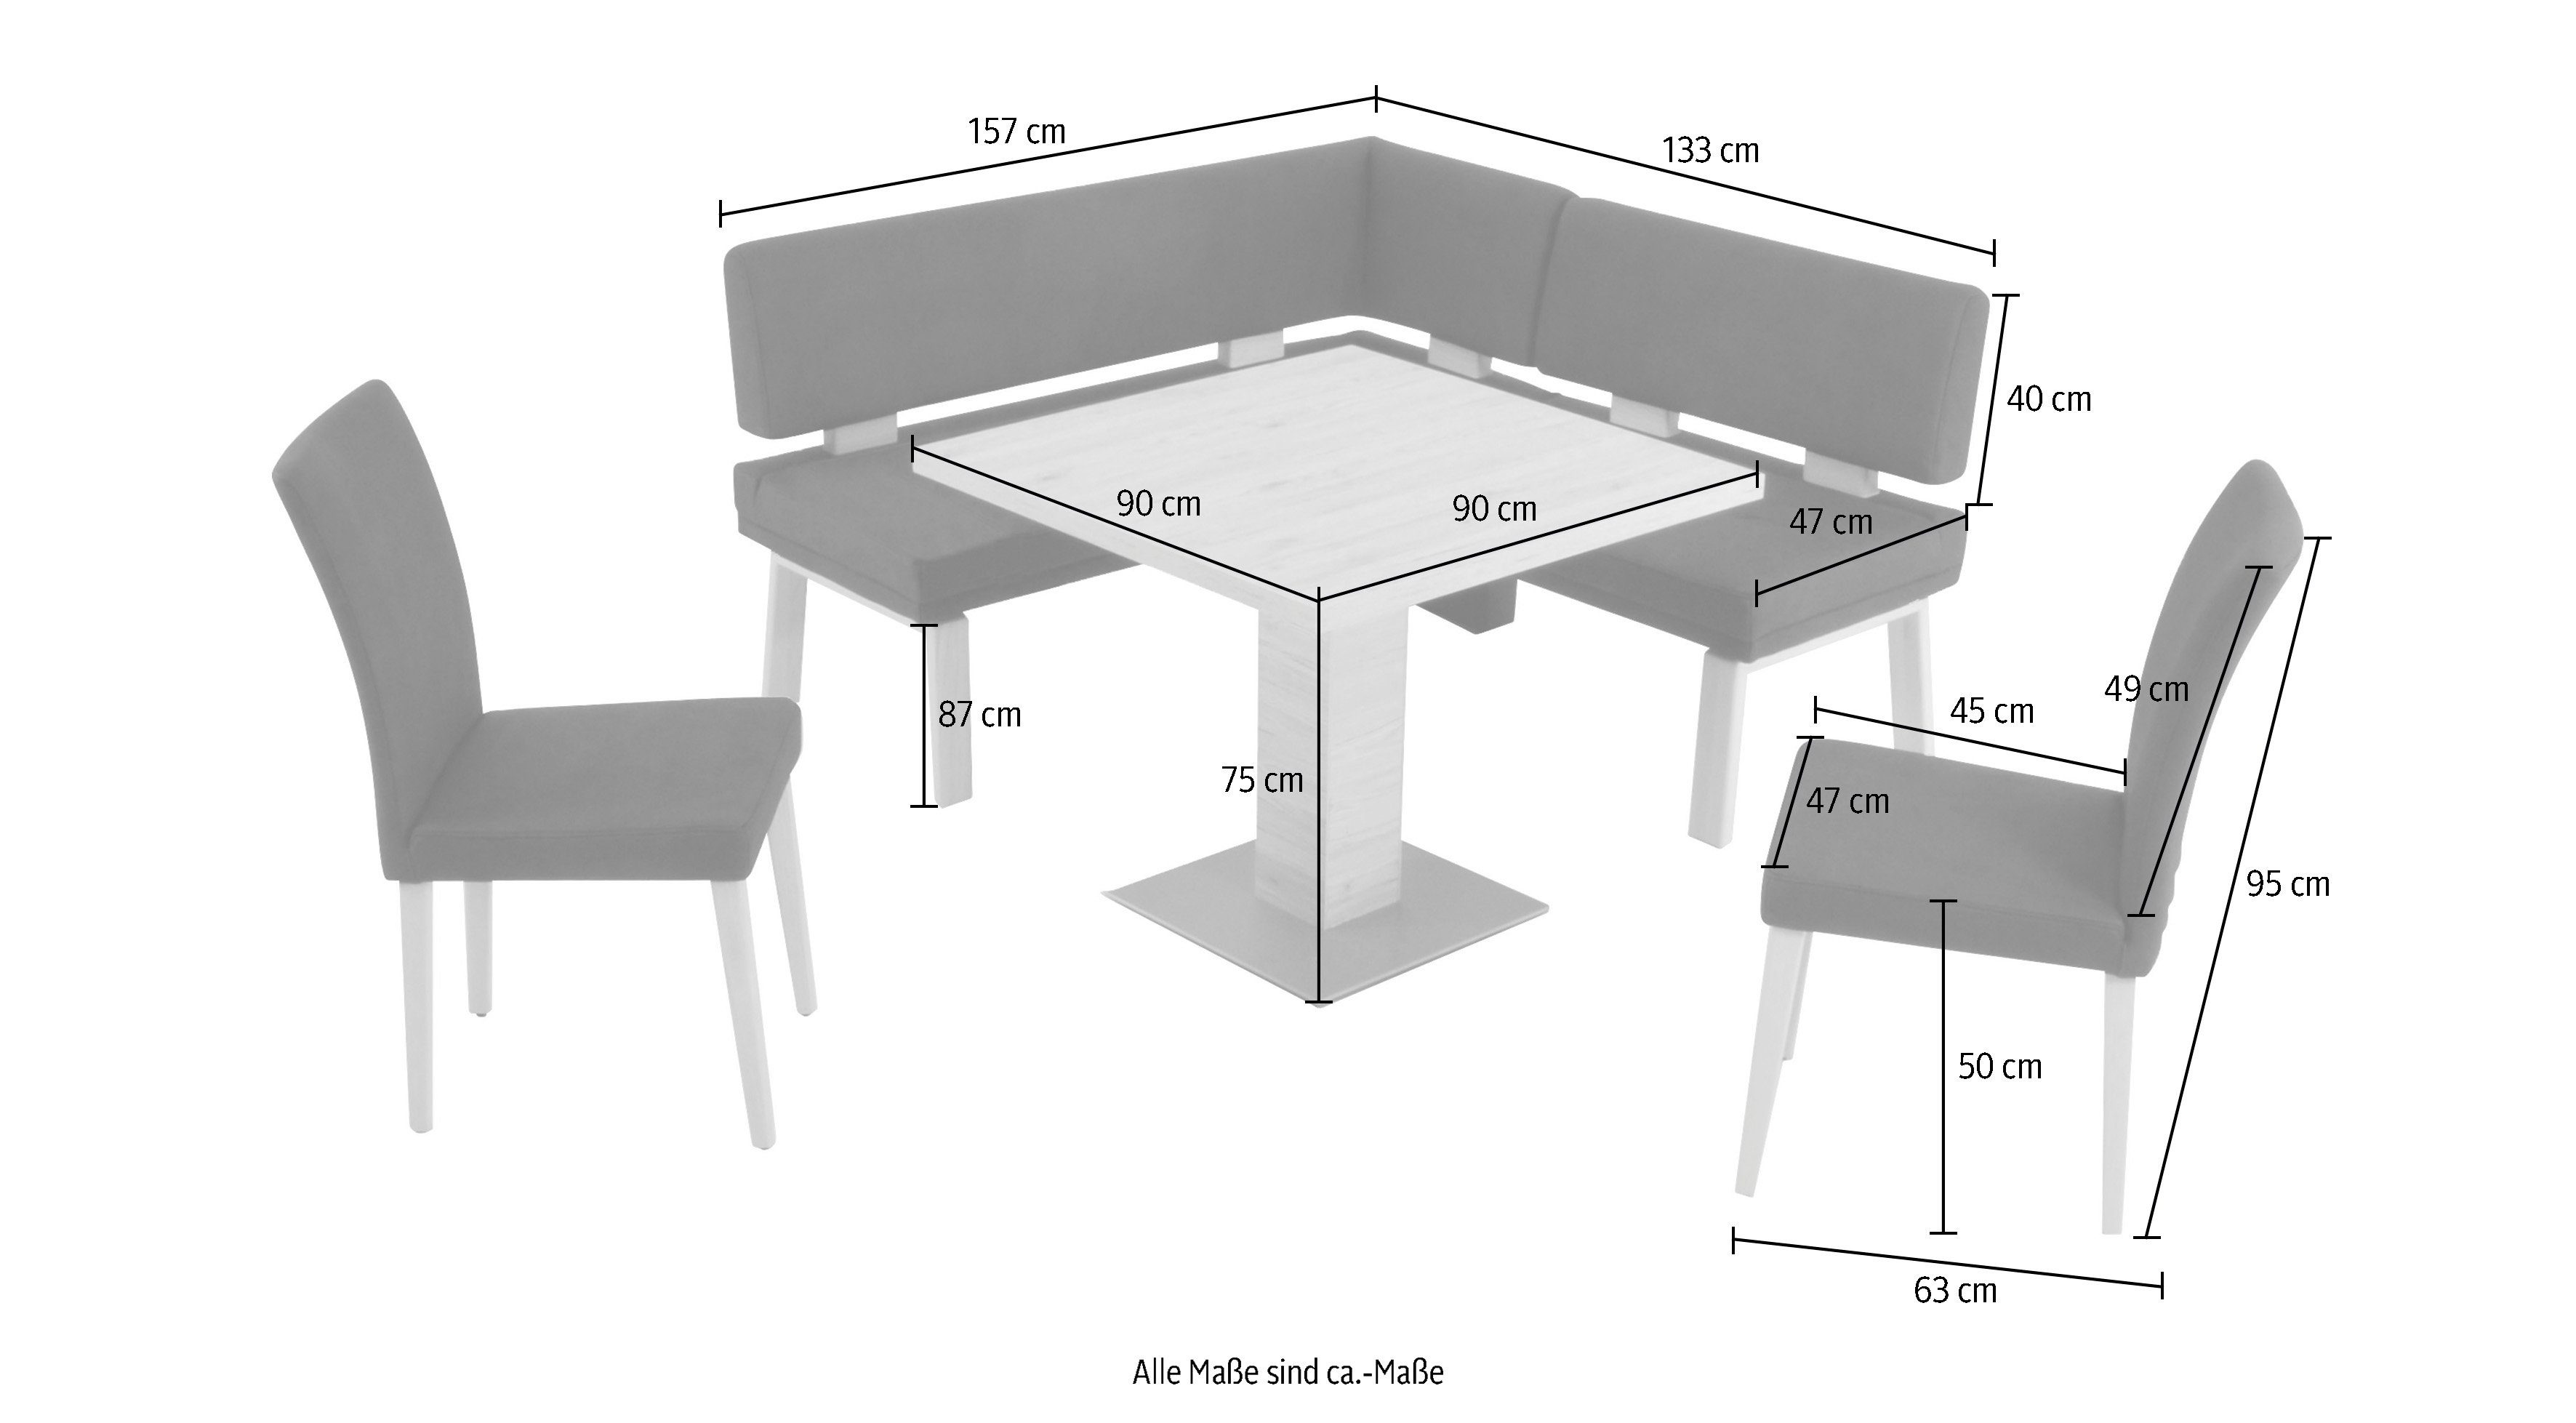 K+W Komfort & Wohnen zwei 90x90cm, Eiche Eckbankgruppe und 157cm, ocean gleichschenklig I, 4-Fußholzstühle Tisch Santos